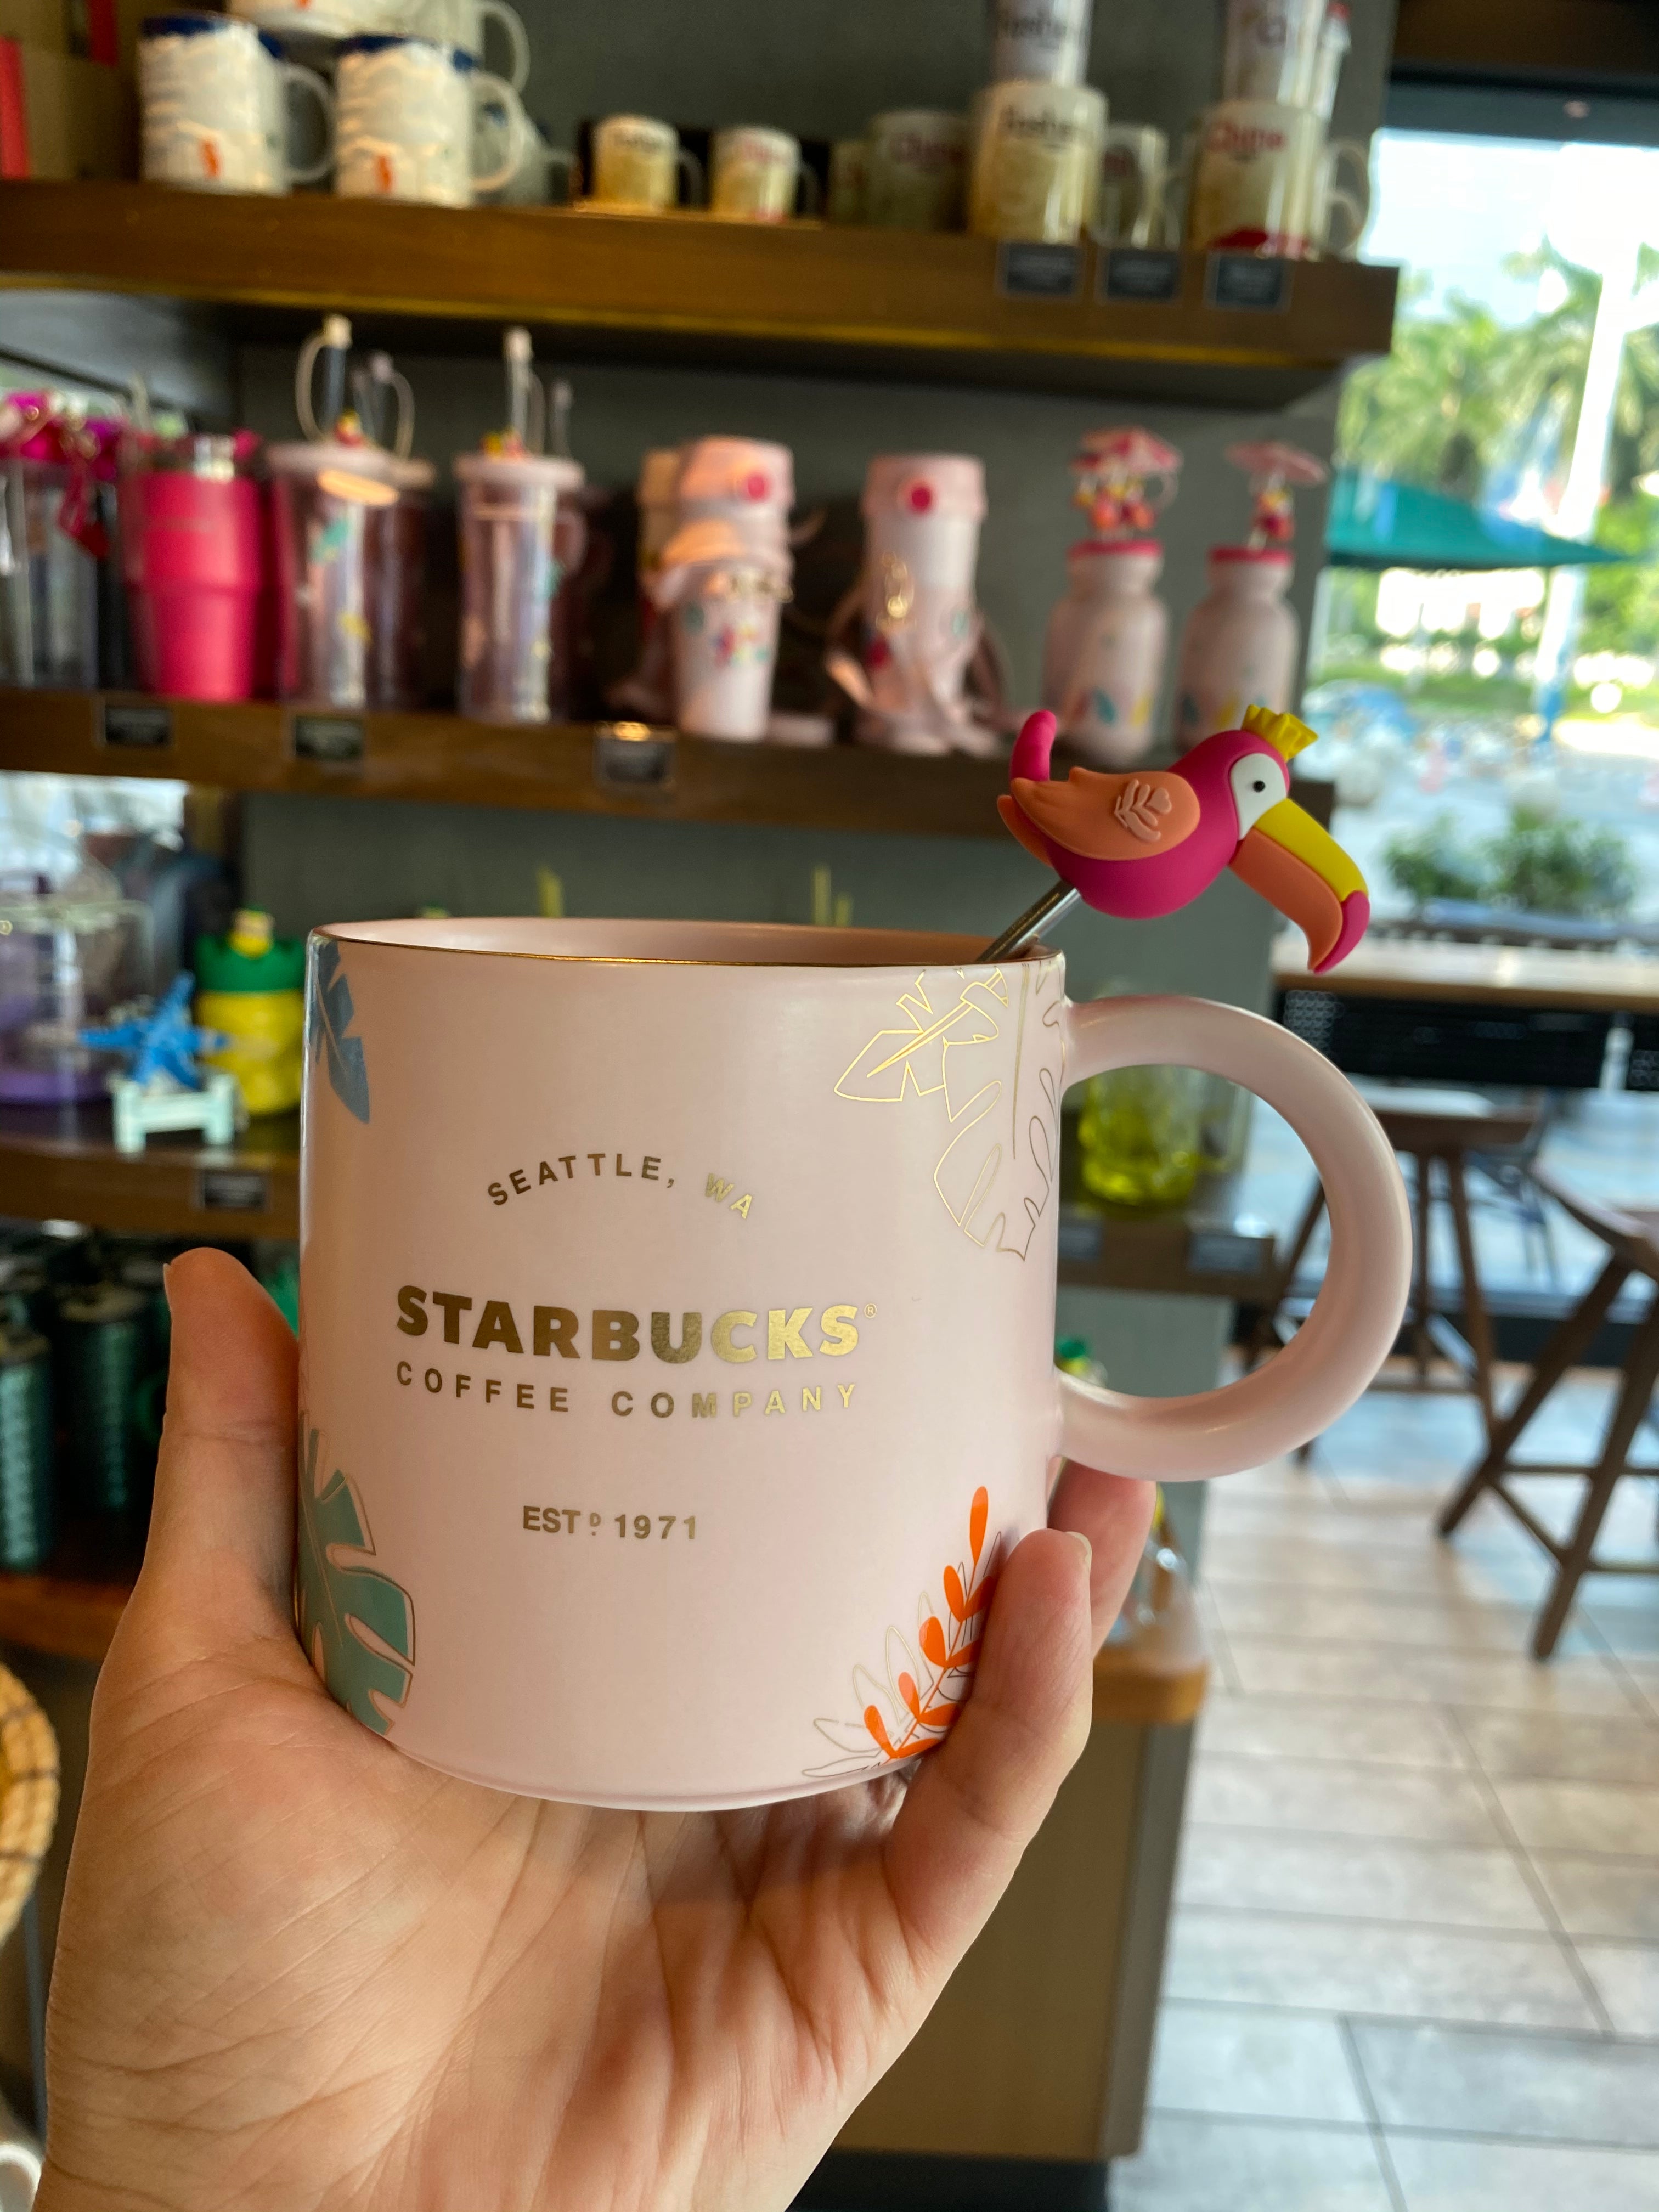 Starbucks China 2021 Colorful jungle contigo Straw cup 473ml